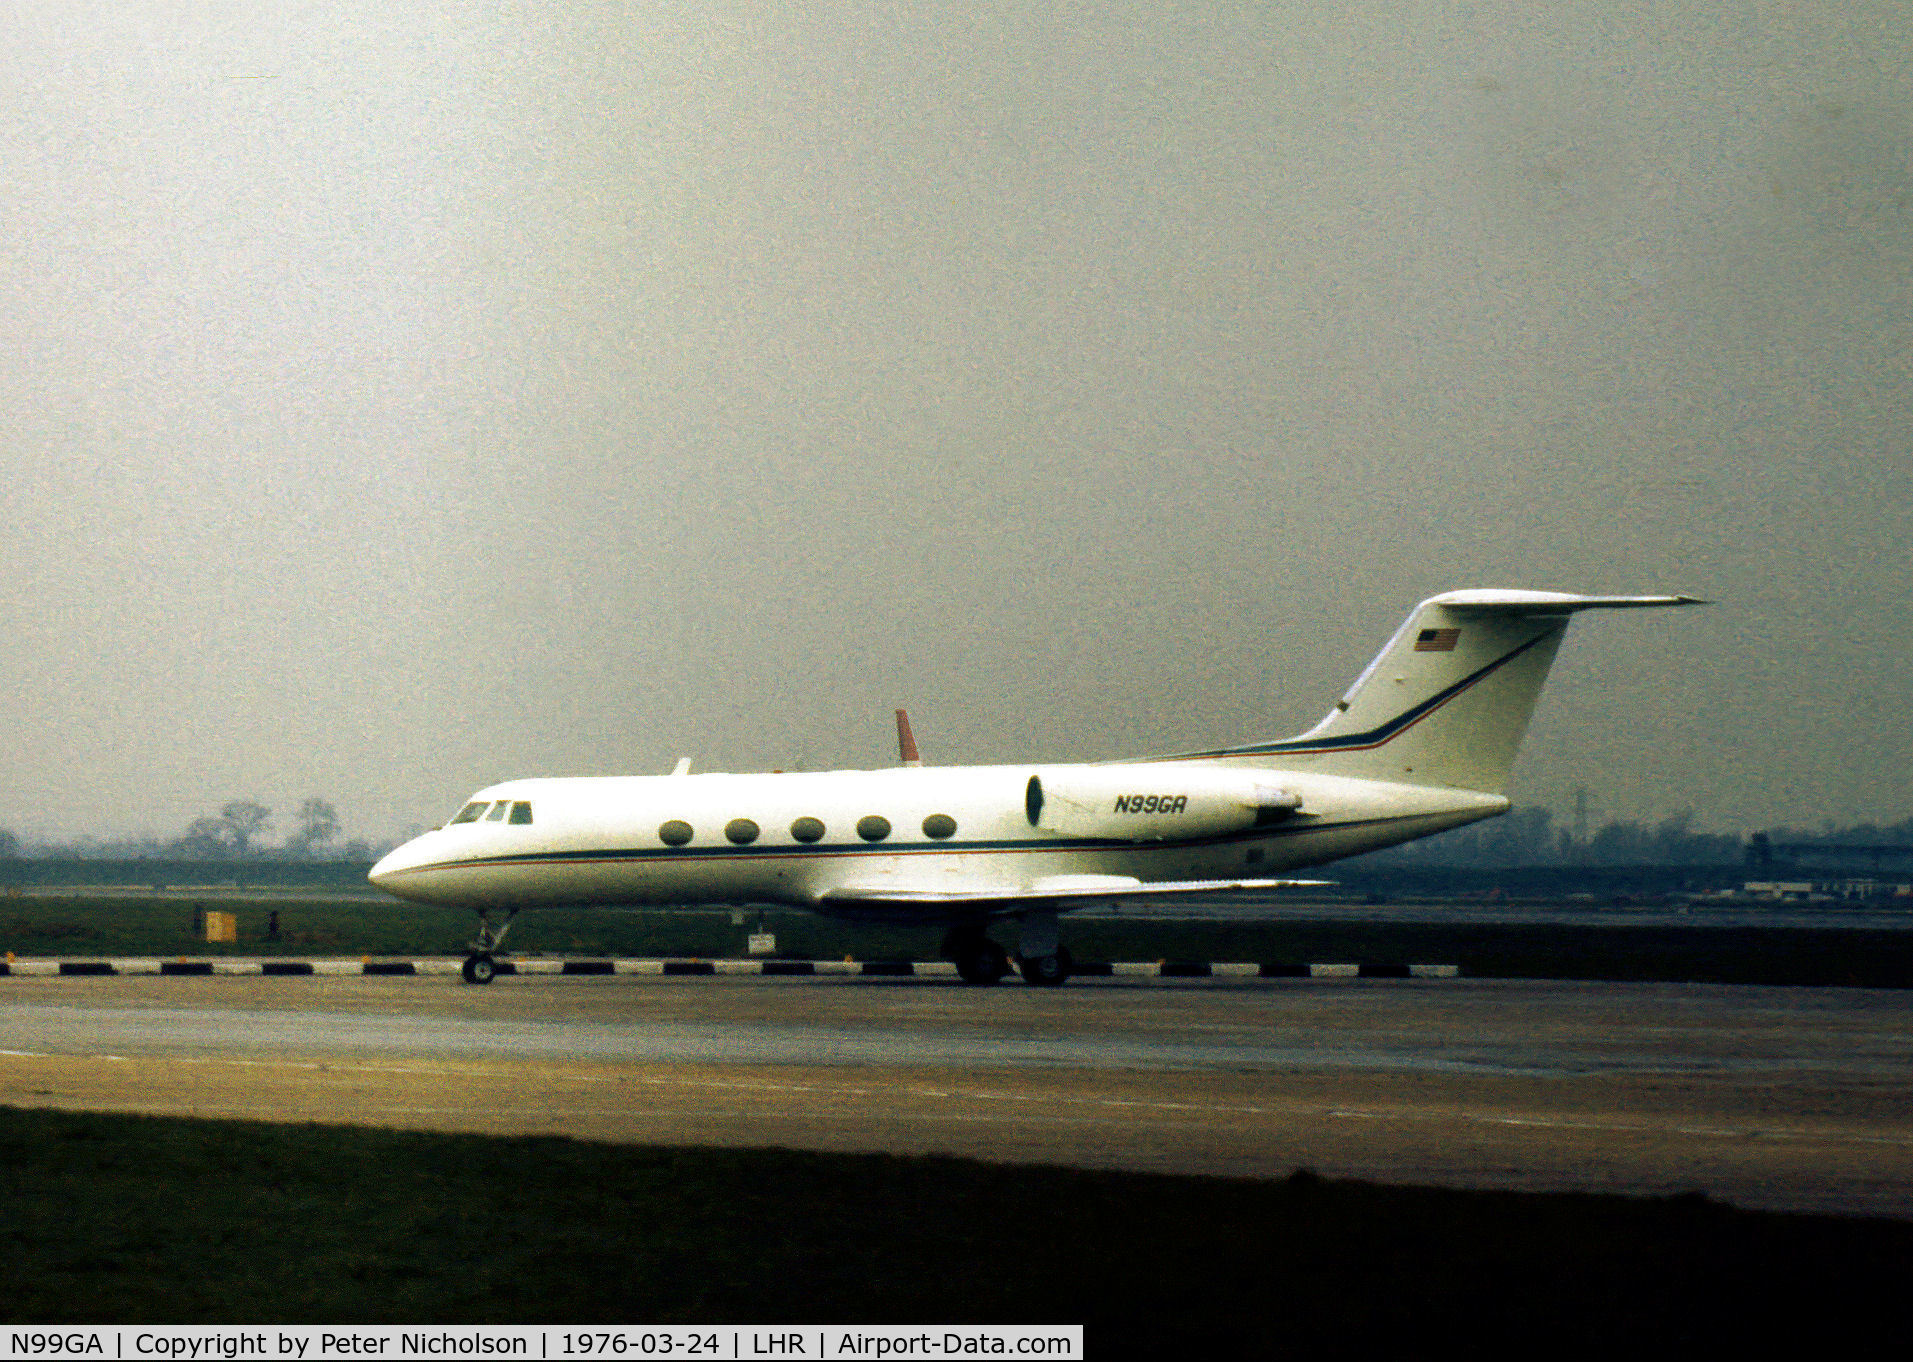 N99GA, 1971 Grumman G-1159 Gulfstream II C/N 99, Gulfstream II of the Greyhound Armour & Company as seen at Heathrow in the Spring of 1976.